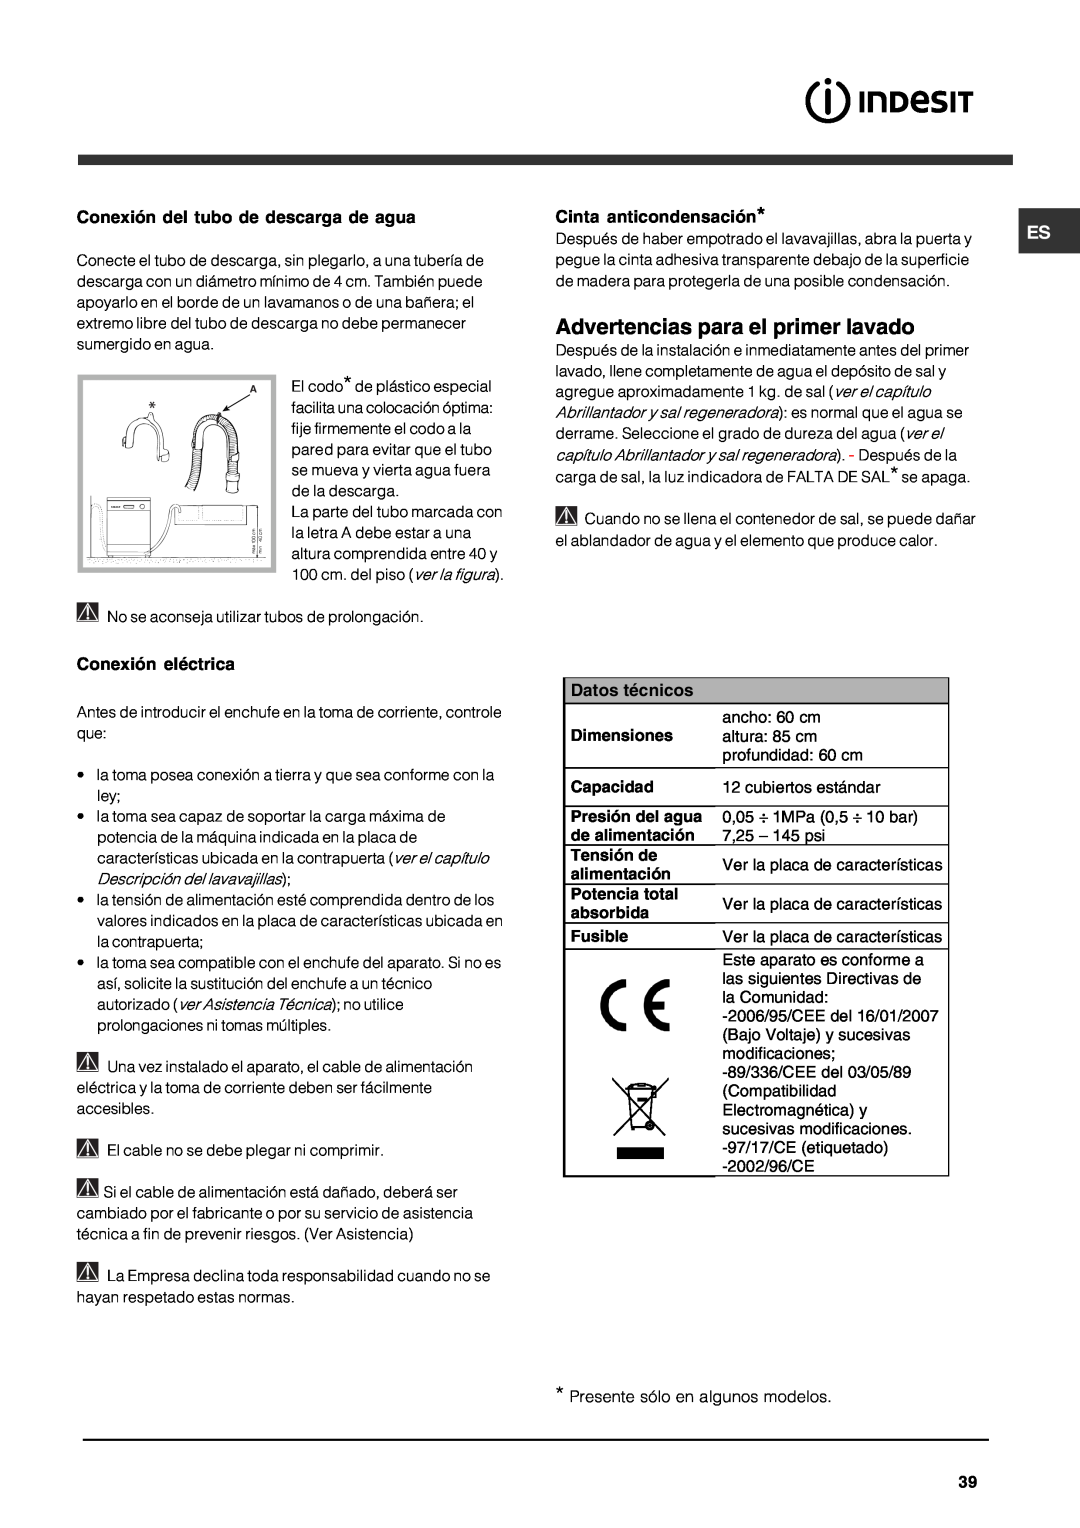 Indesit DFG 262 Advertencias para el primer lavado, Conexión del tubo de descarga de agua, Cinta anticondensación 